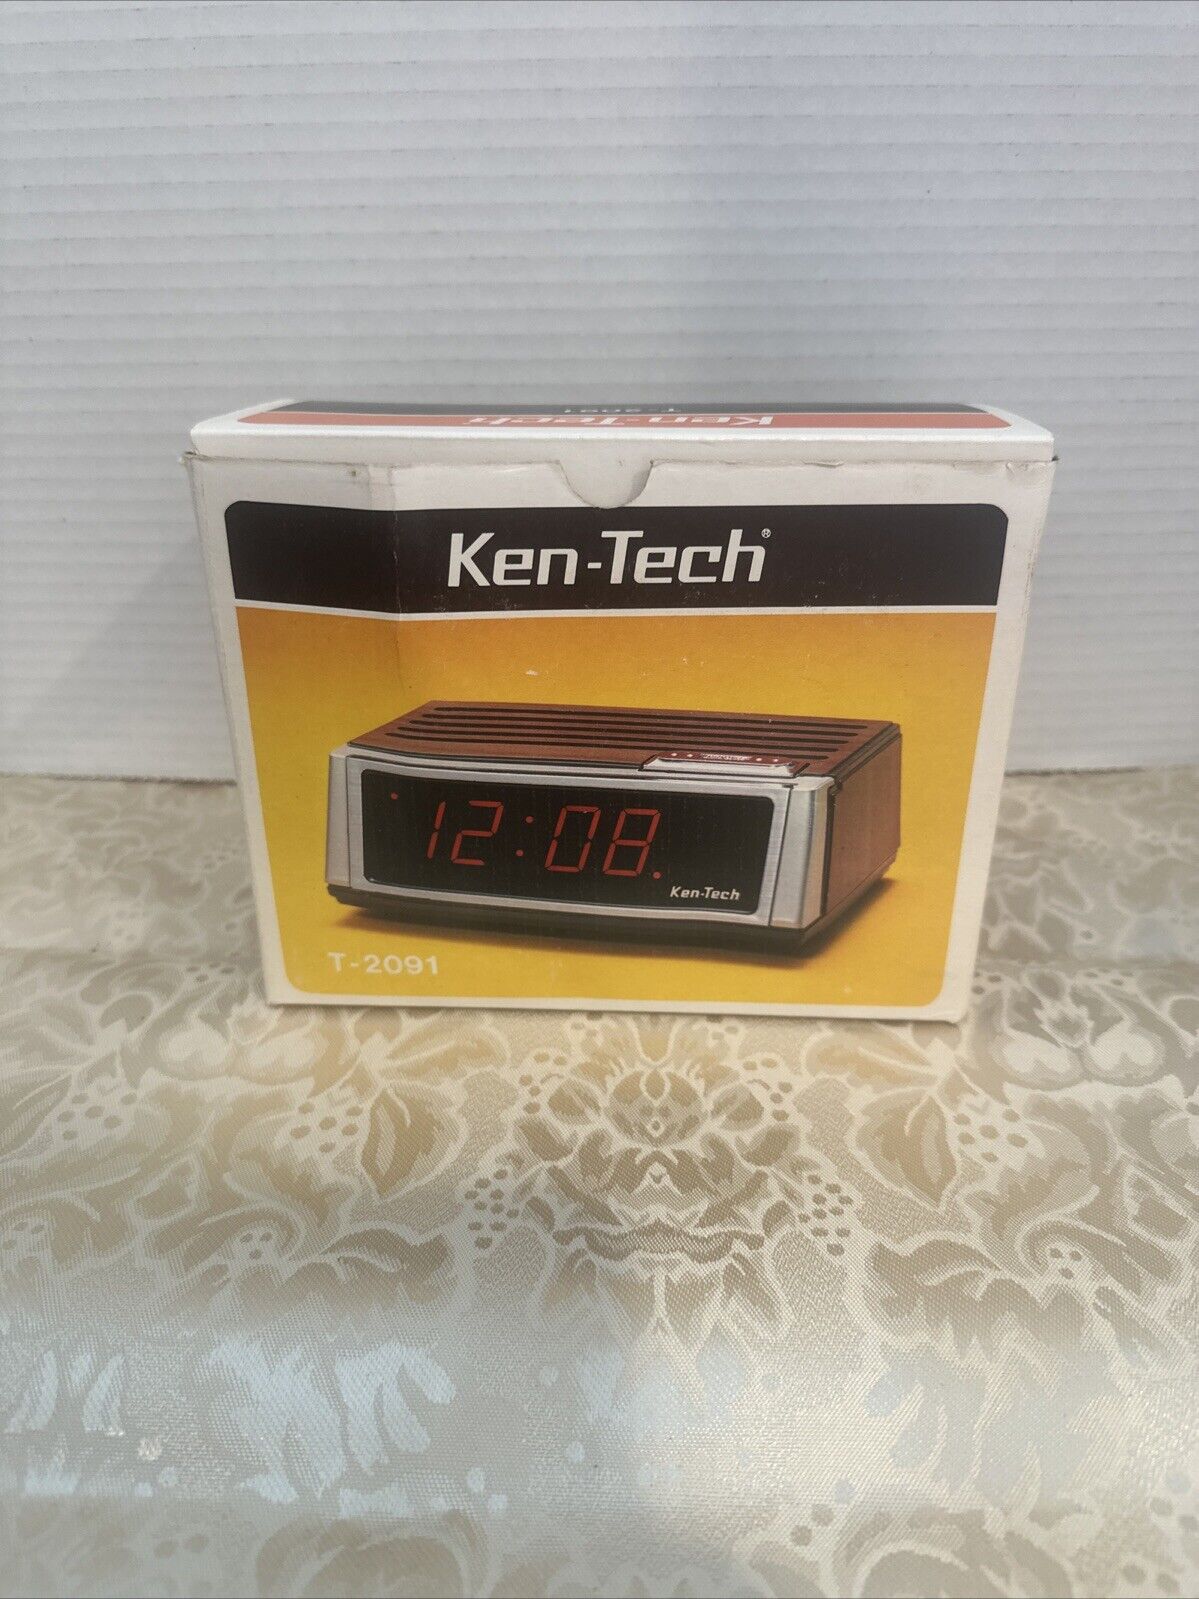 Rare Deadstock Vintage Ken-Tech Digital Alarm Clock Model T-2091 Japan NIB